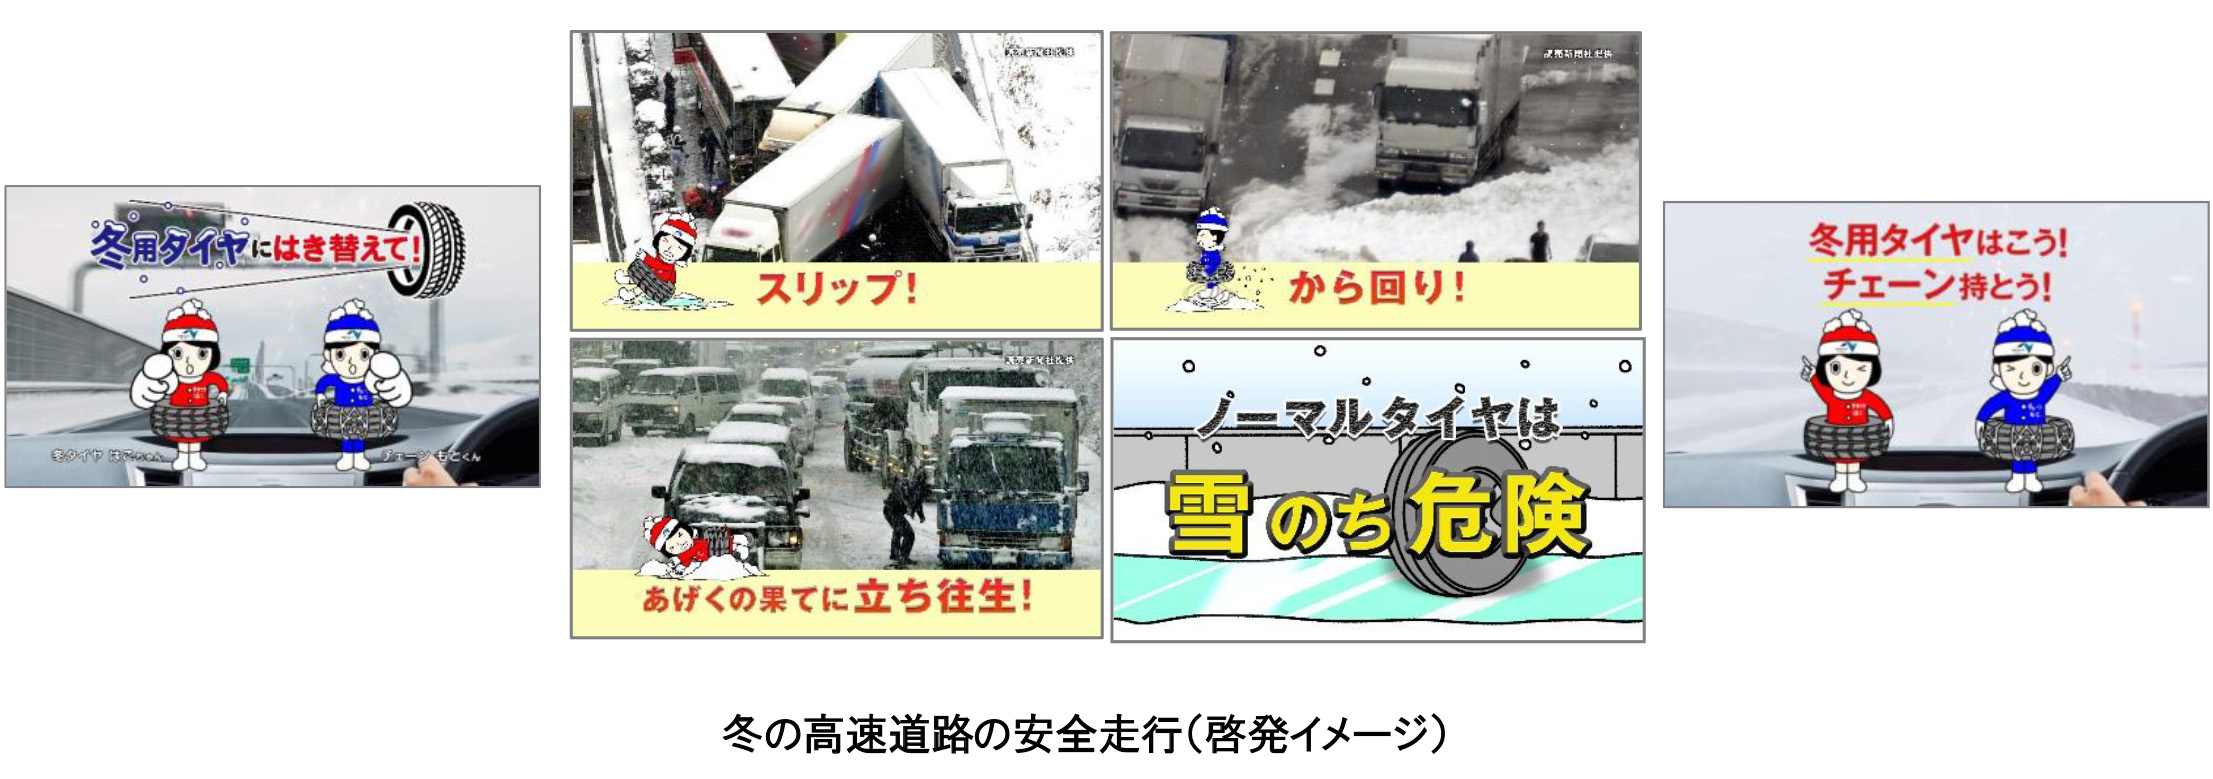 冬の高速道路の安全 安心について Nexco西日本のプレスリリース